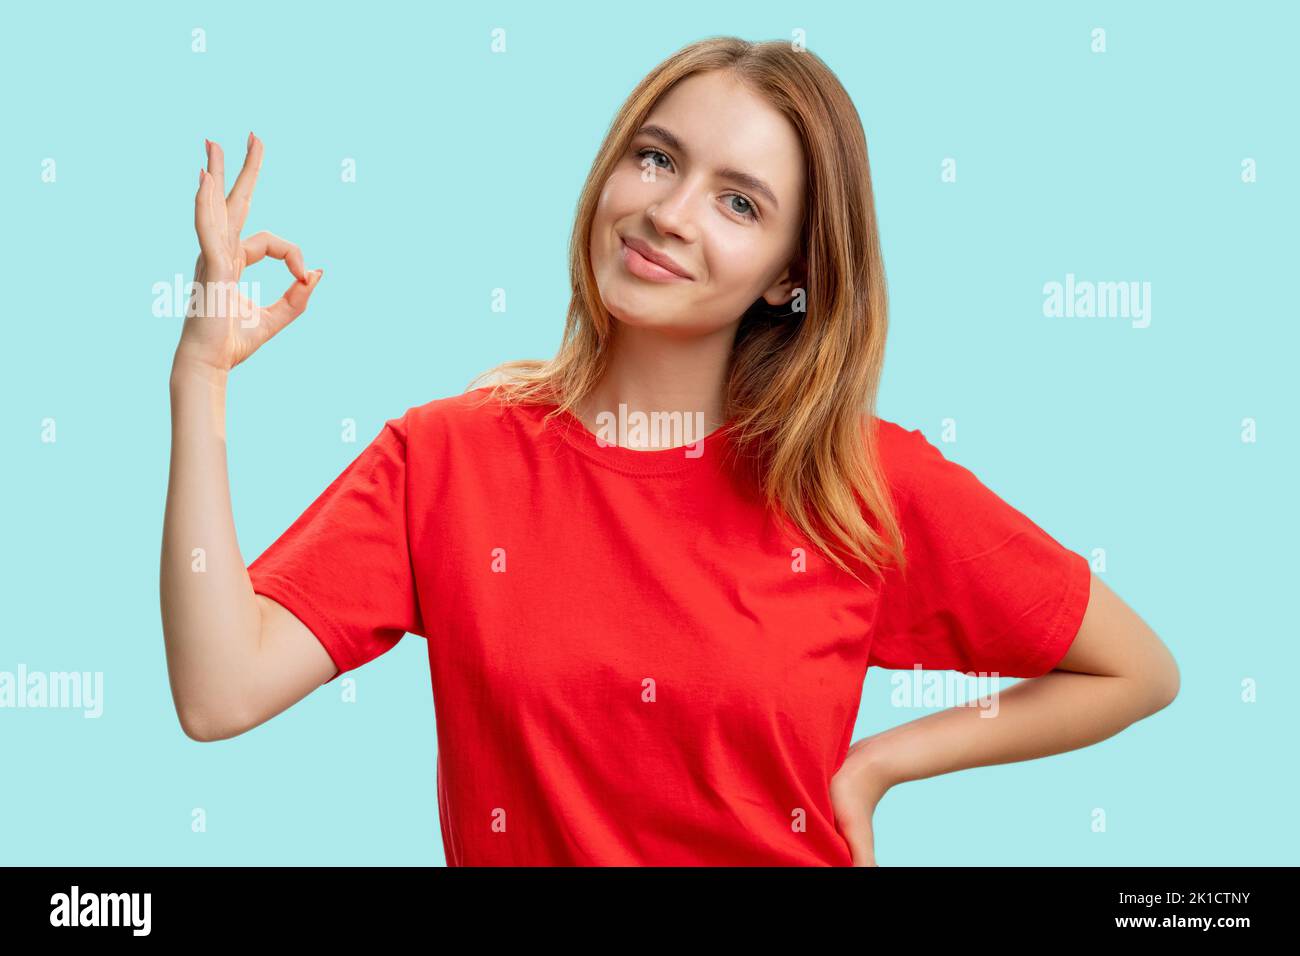 OK-Schild. Gut gemacht. Porträt einer zufriedenen freundlichen Frau in rotem T-Shirt ermutigend mit Zustimmung Hand Geste lächelnd isoliert auf blauem Hintergrund. De Stockfoto